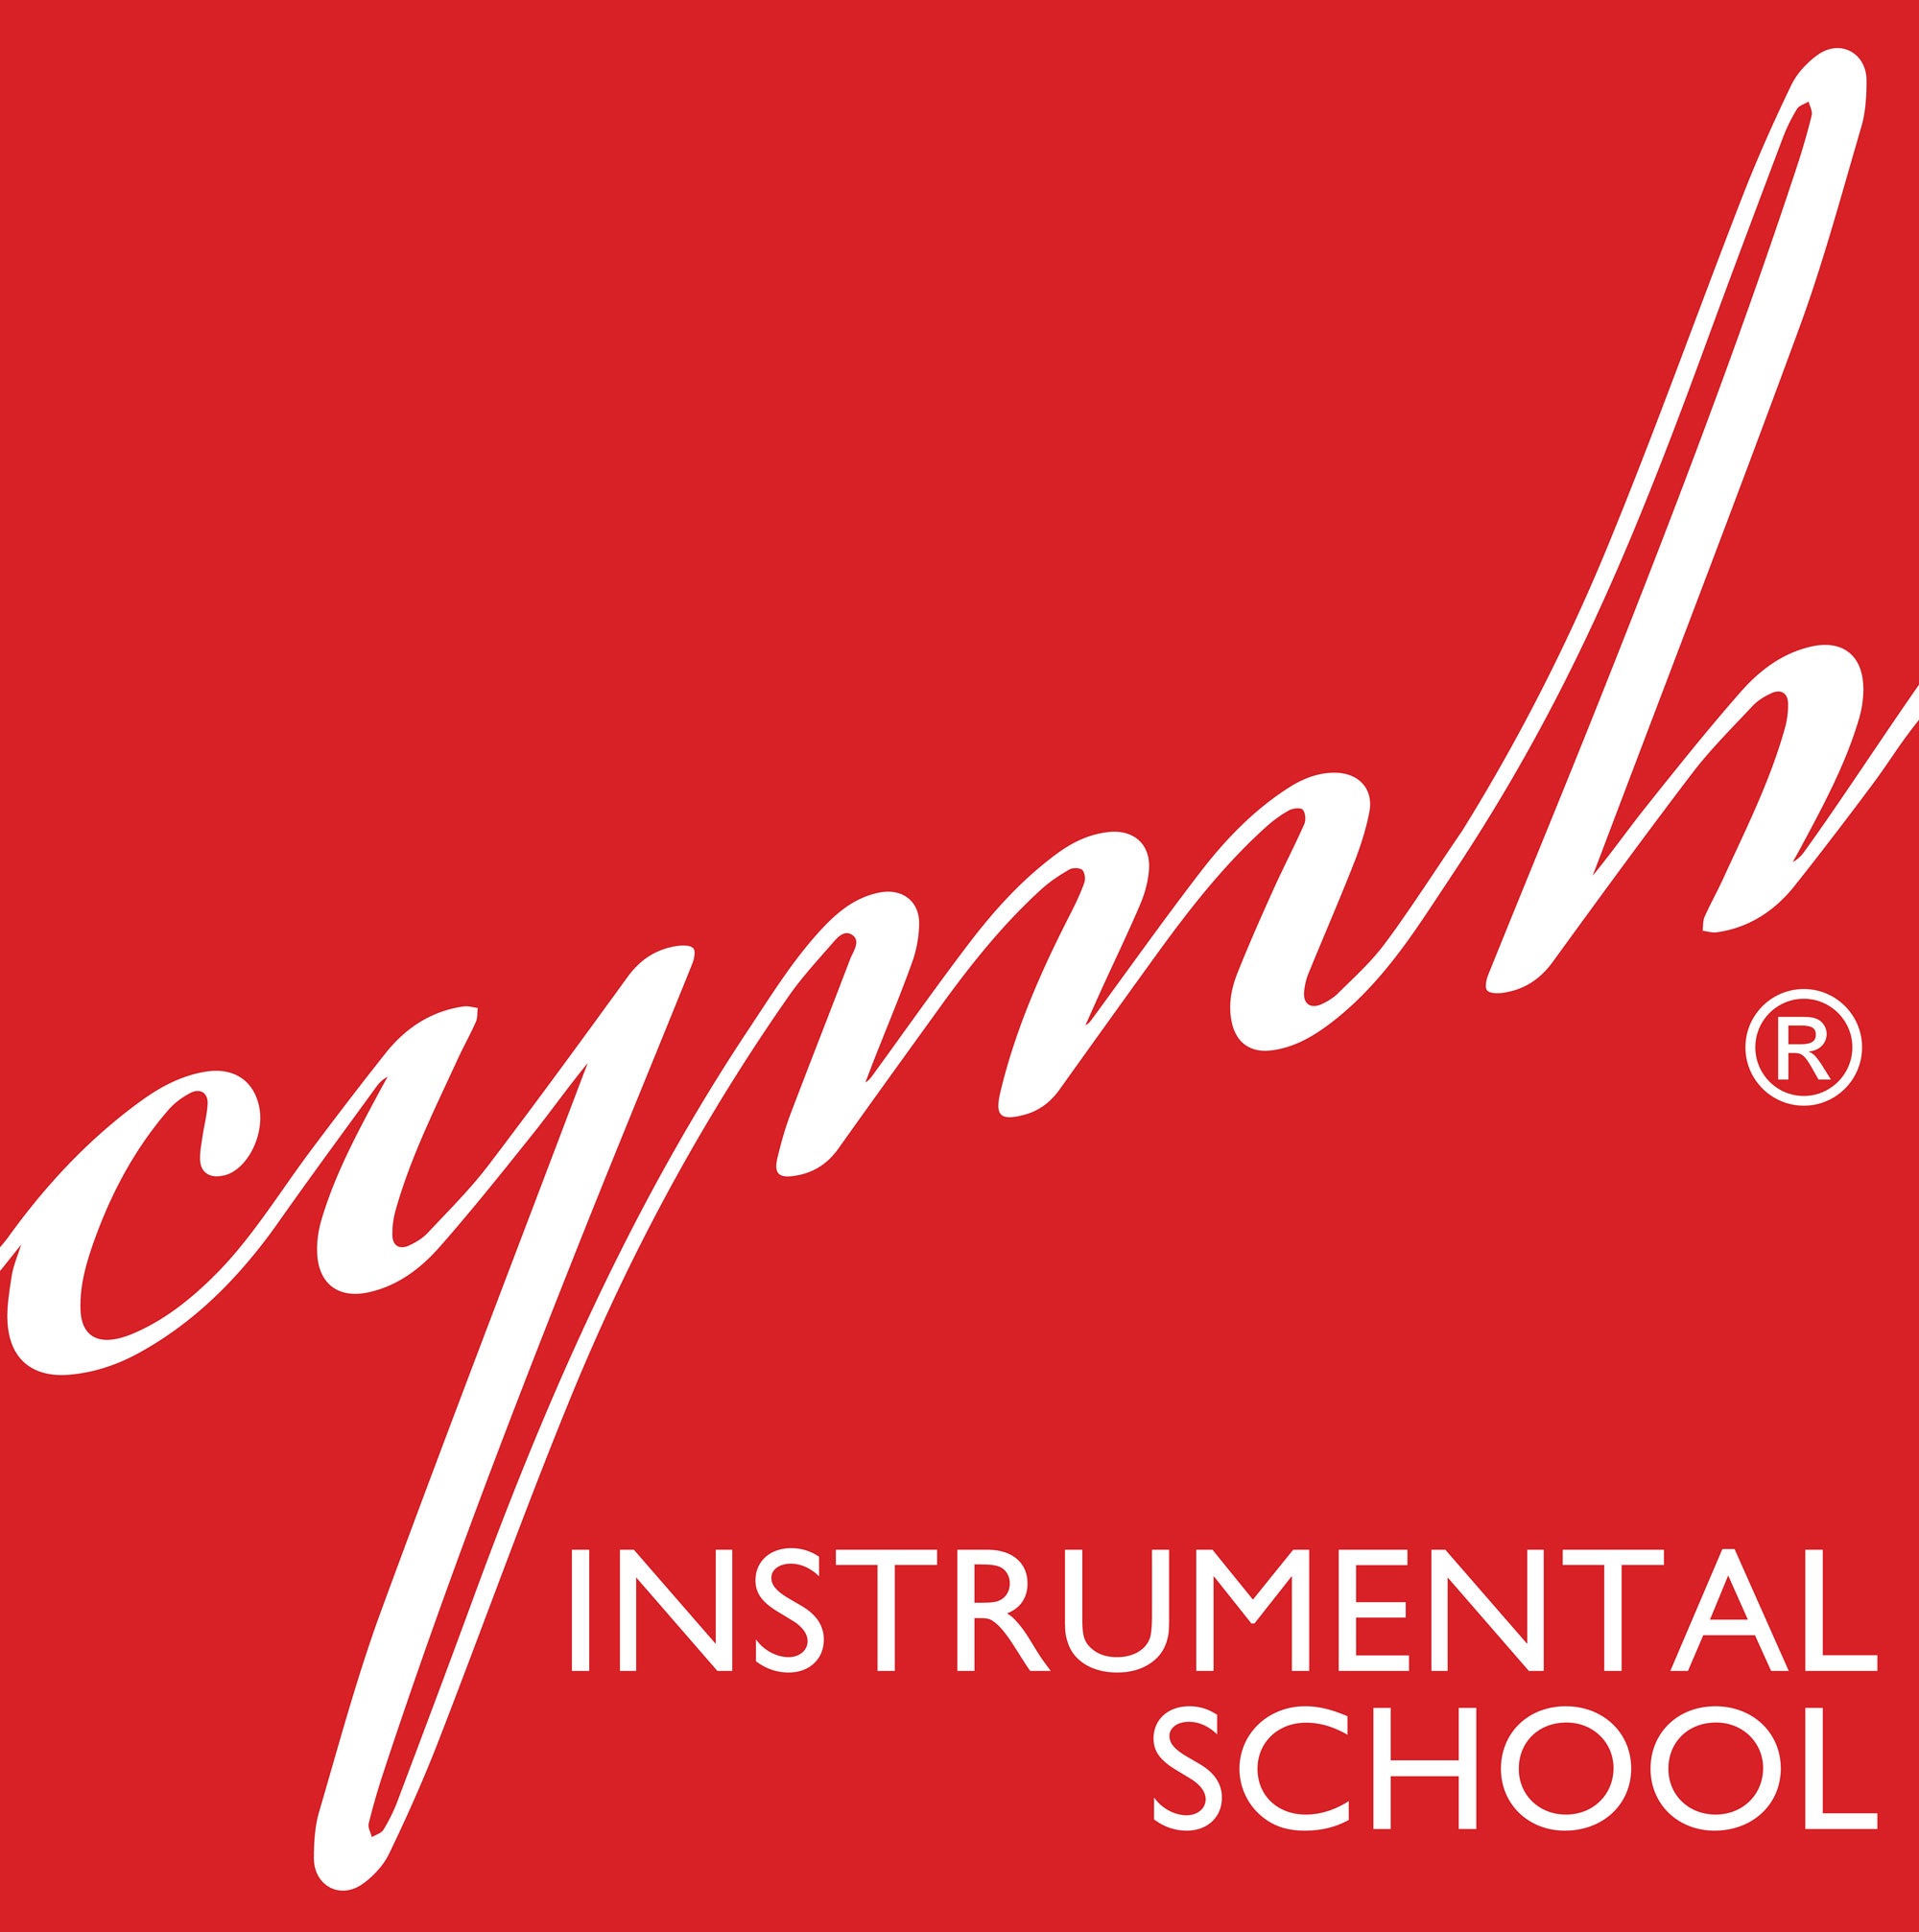 CYMH Instrumental School